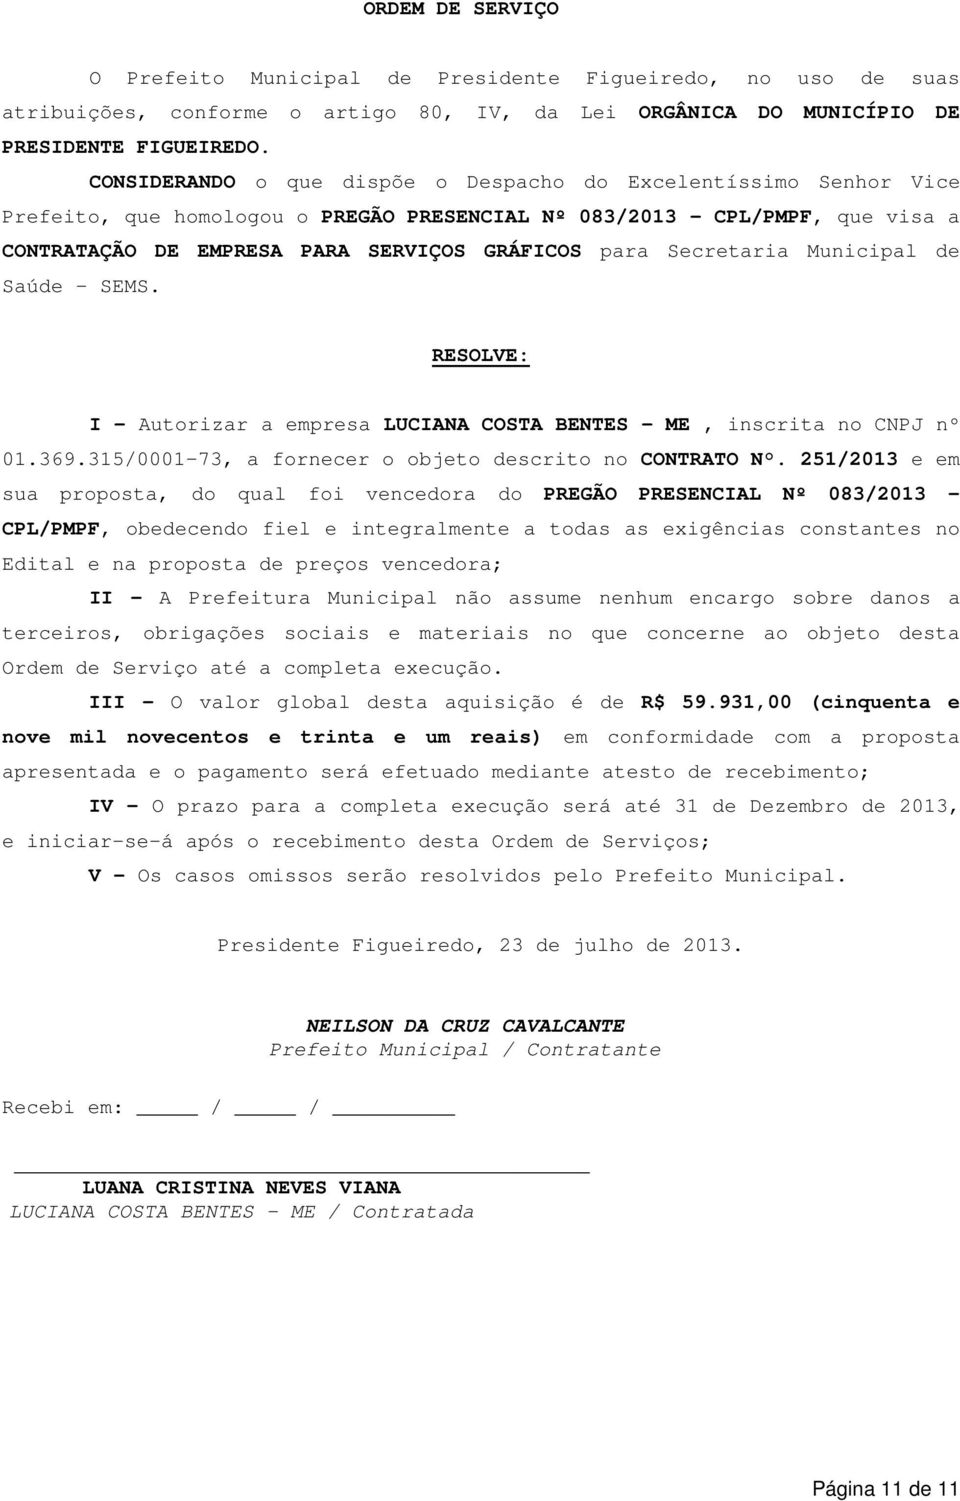 Secretaria Municipal de Saúde - SEMS. RESOLVE: I Autorizar a empresa LUCIANA COSTA BENTES - ME, inscrita no CNPJ nº 01.369.31/0001-73, a fornecer o objeto descrito no CONTRATO N.